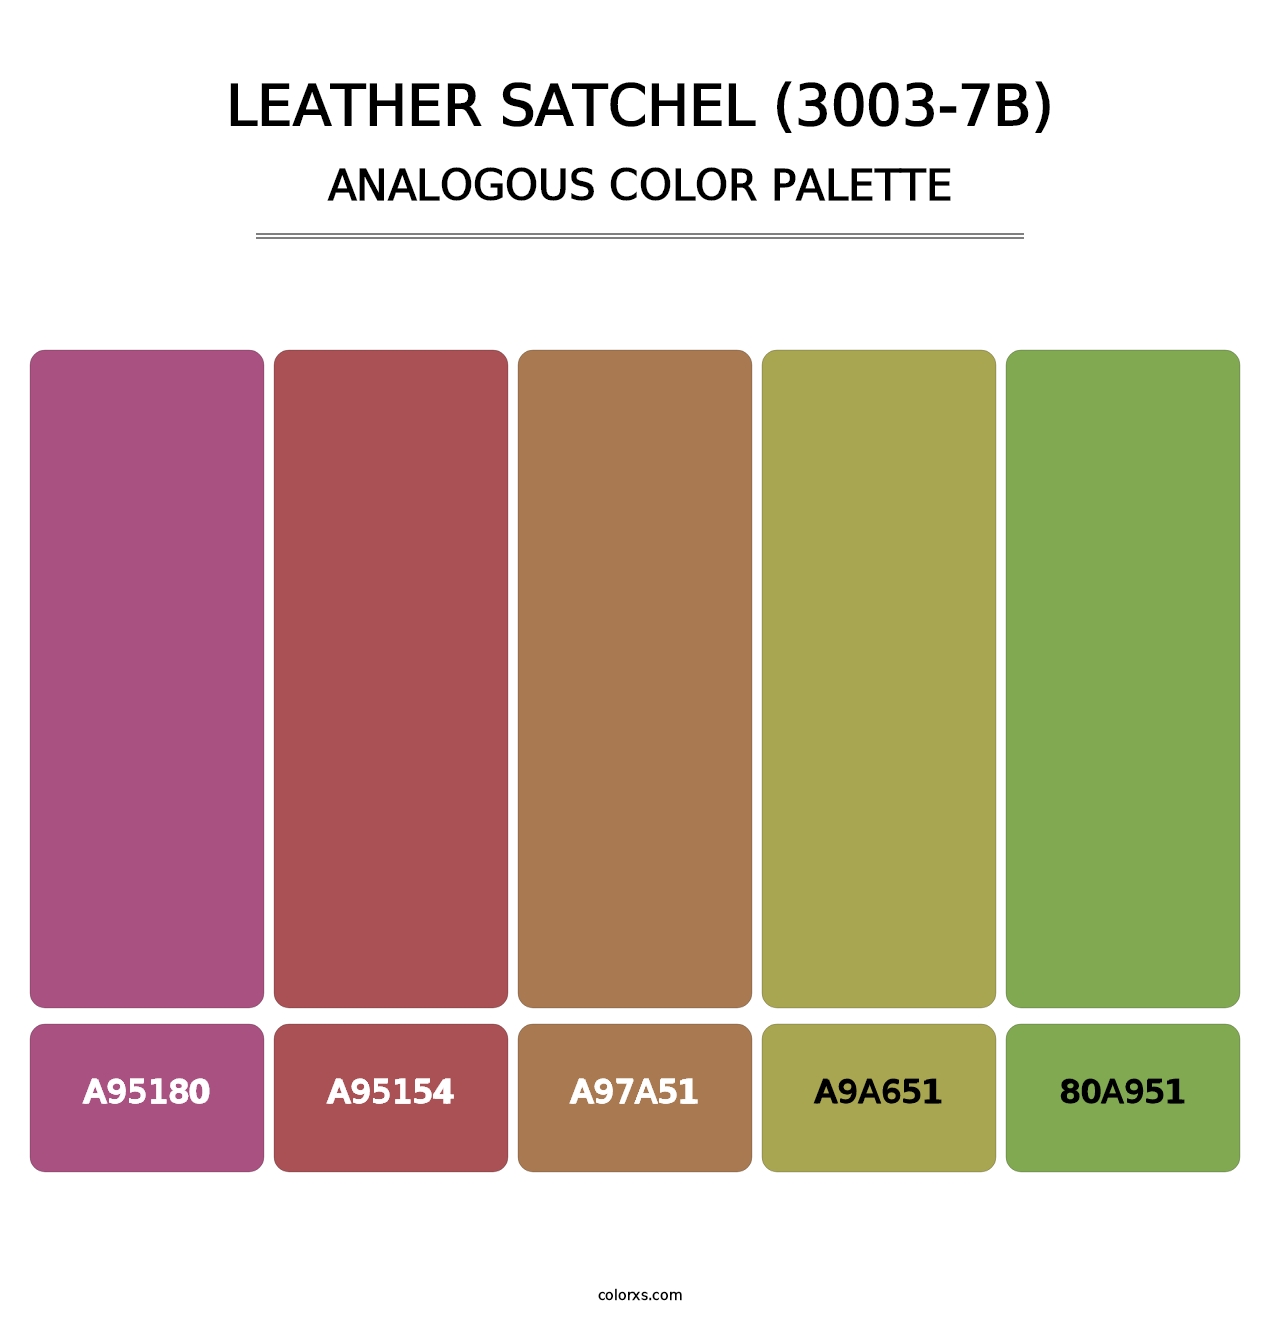 Leather Satchel (3003-7B) - Analogous Color Palette